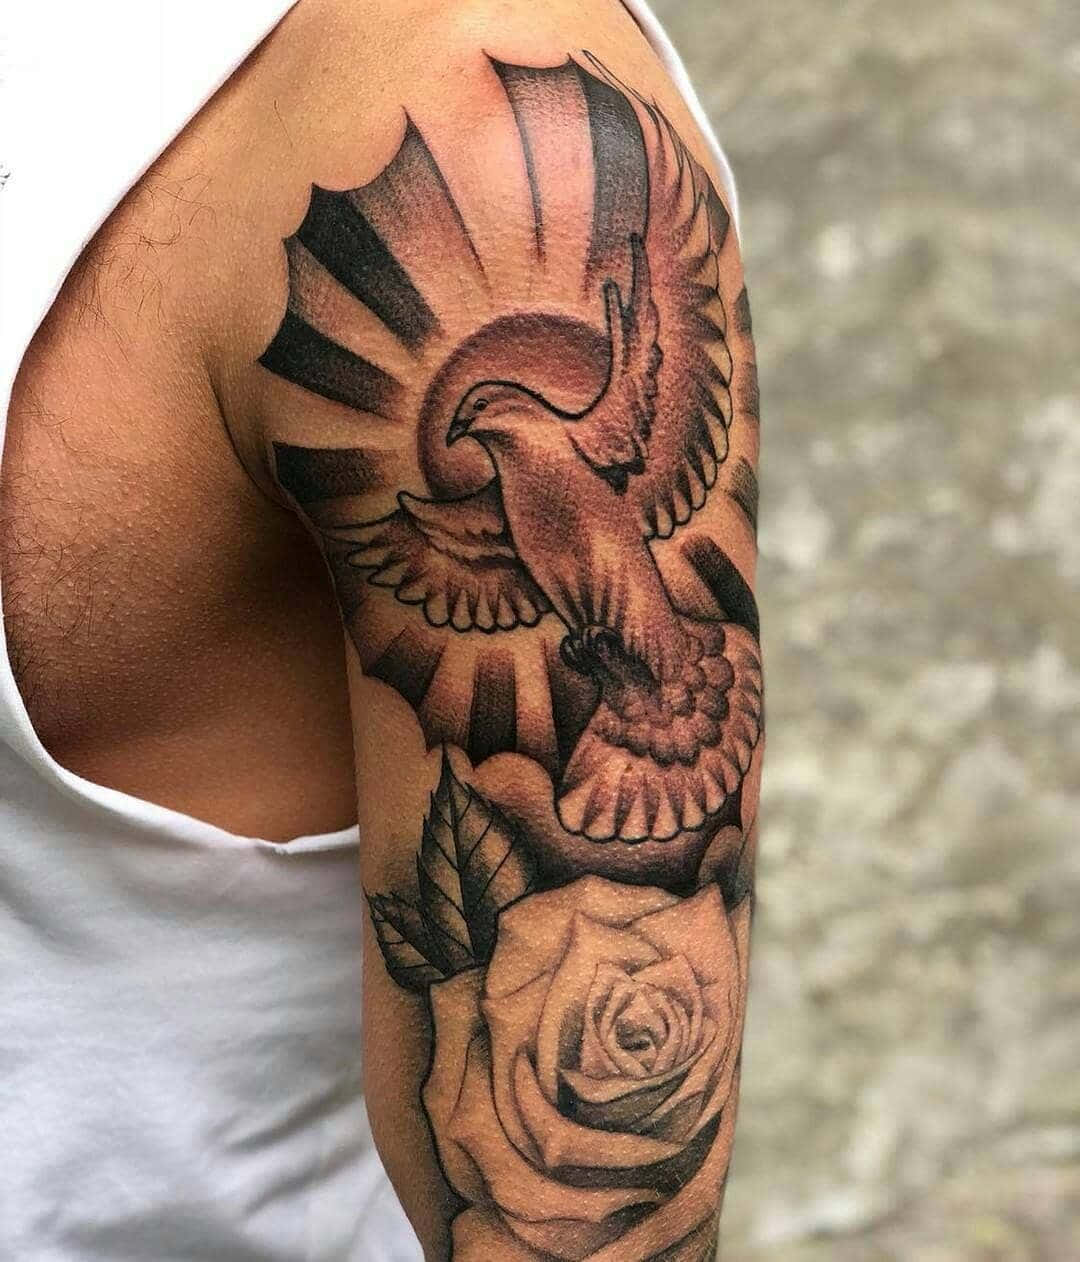 Imagende Tatuaje De Una Paloma Y Rosas En El Brazo.